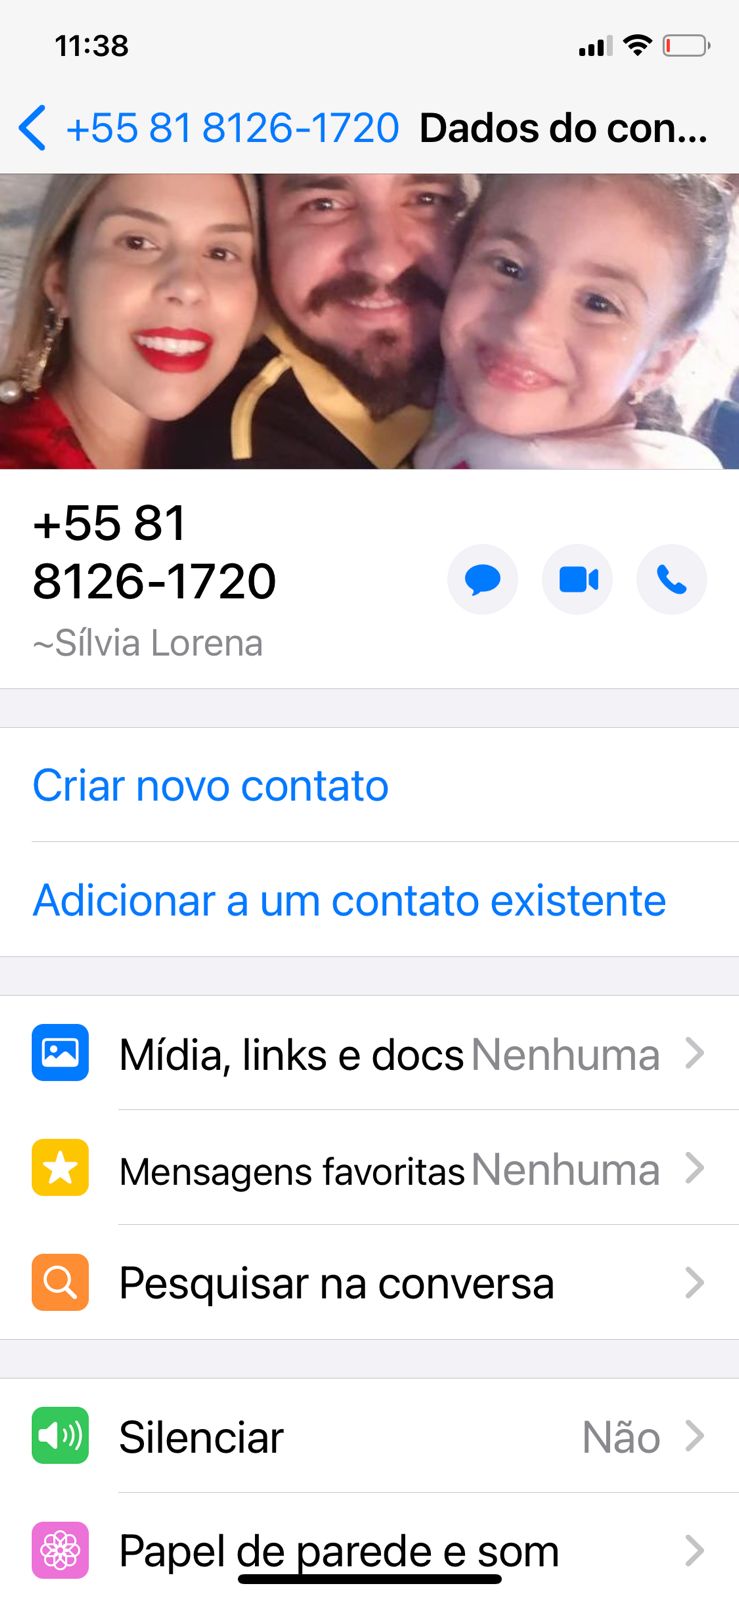 WhatsApp-Image-2021-10-05-at-11.45.27 Estelionatários usam imagem de advogado Monteirense para aplicar golpes